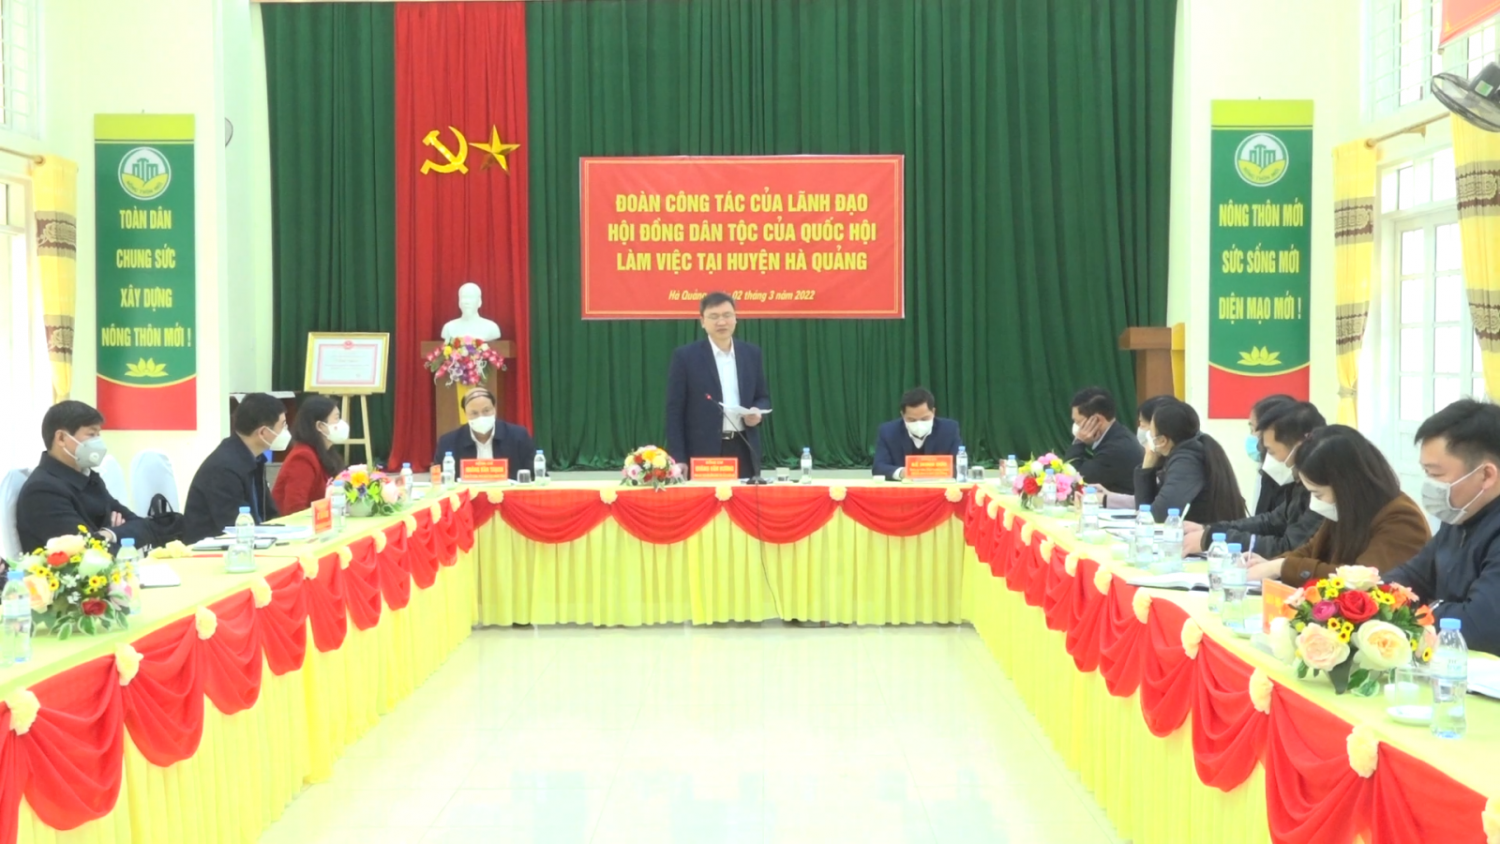 Phó Chủ tịch Hội đồng Dân tộc của Quốc hội Quàng Văn Hương phát biểu tại buổi làm việc với huyện Hà Quảng